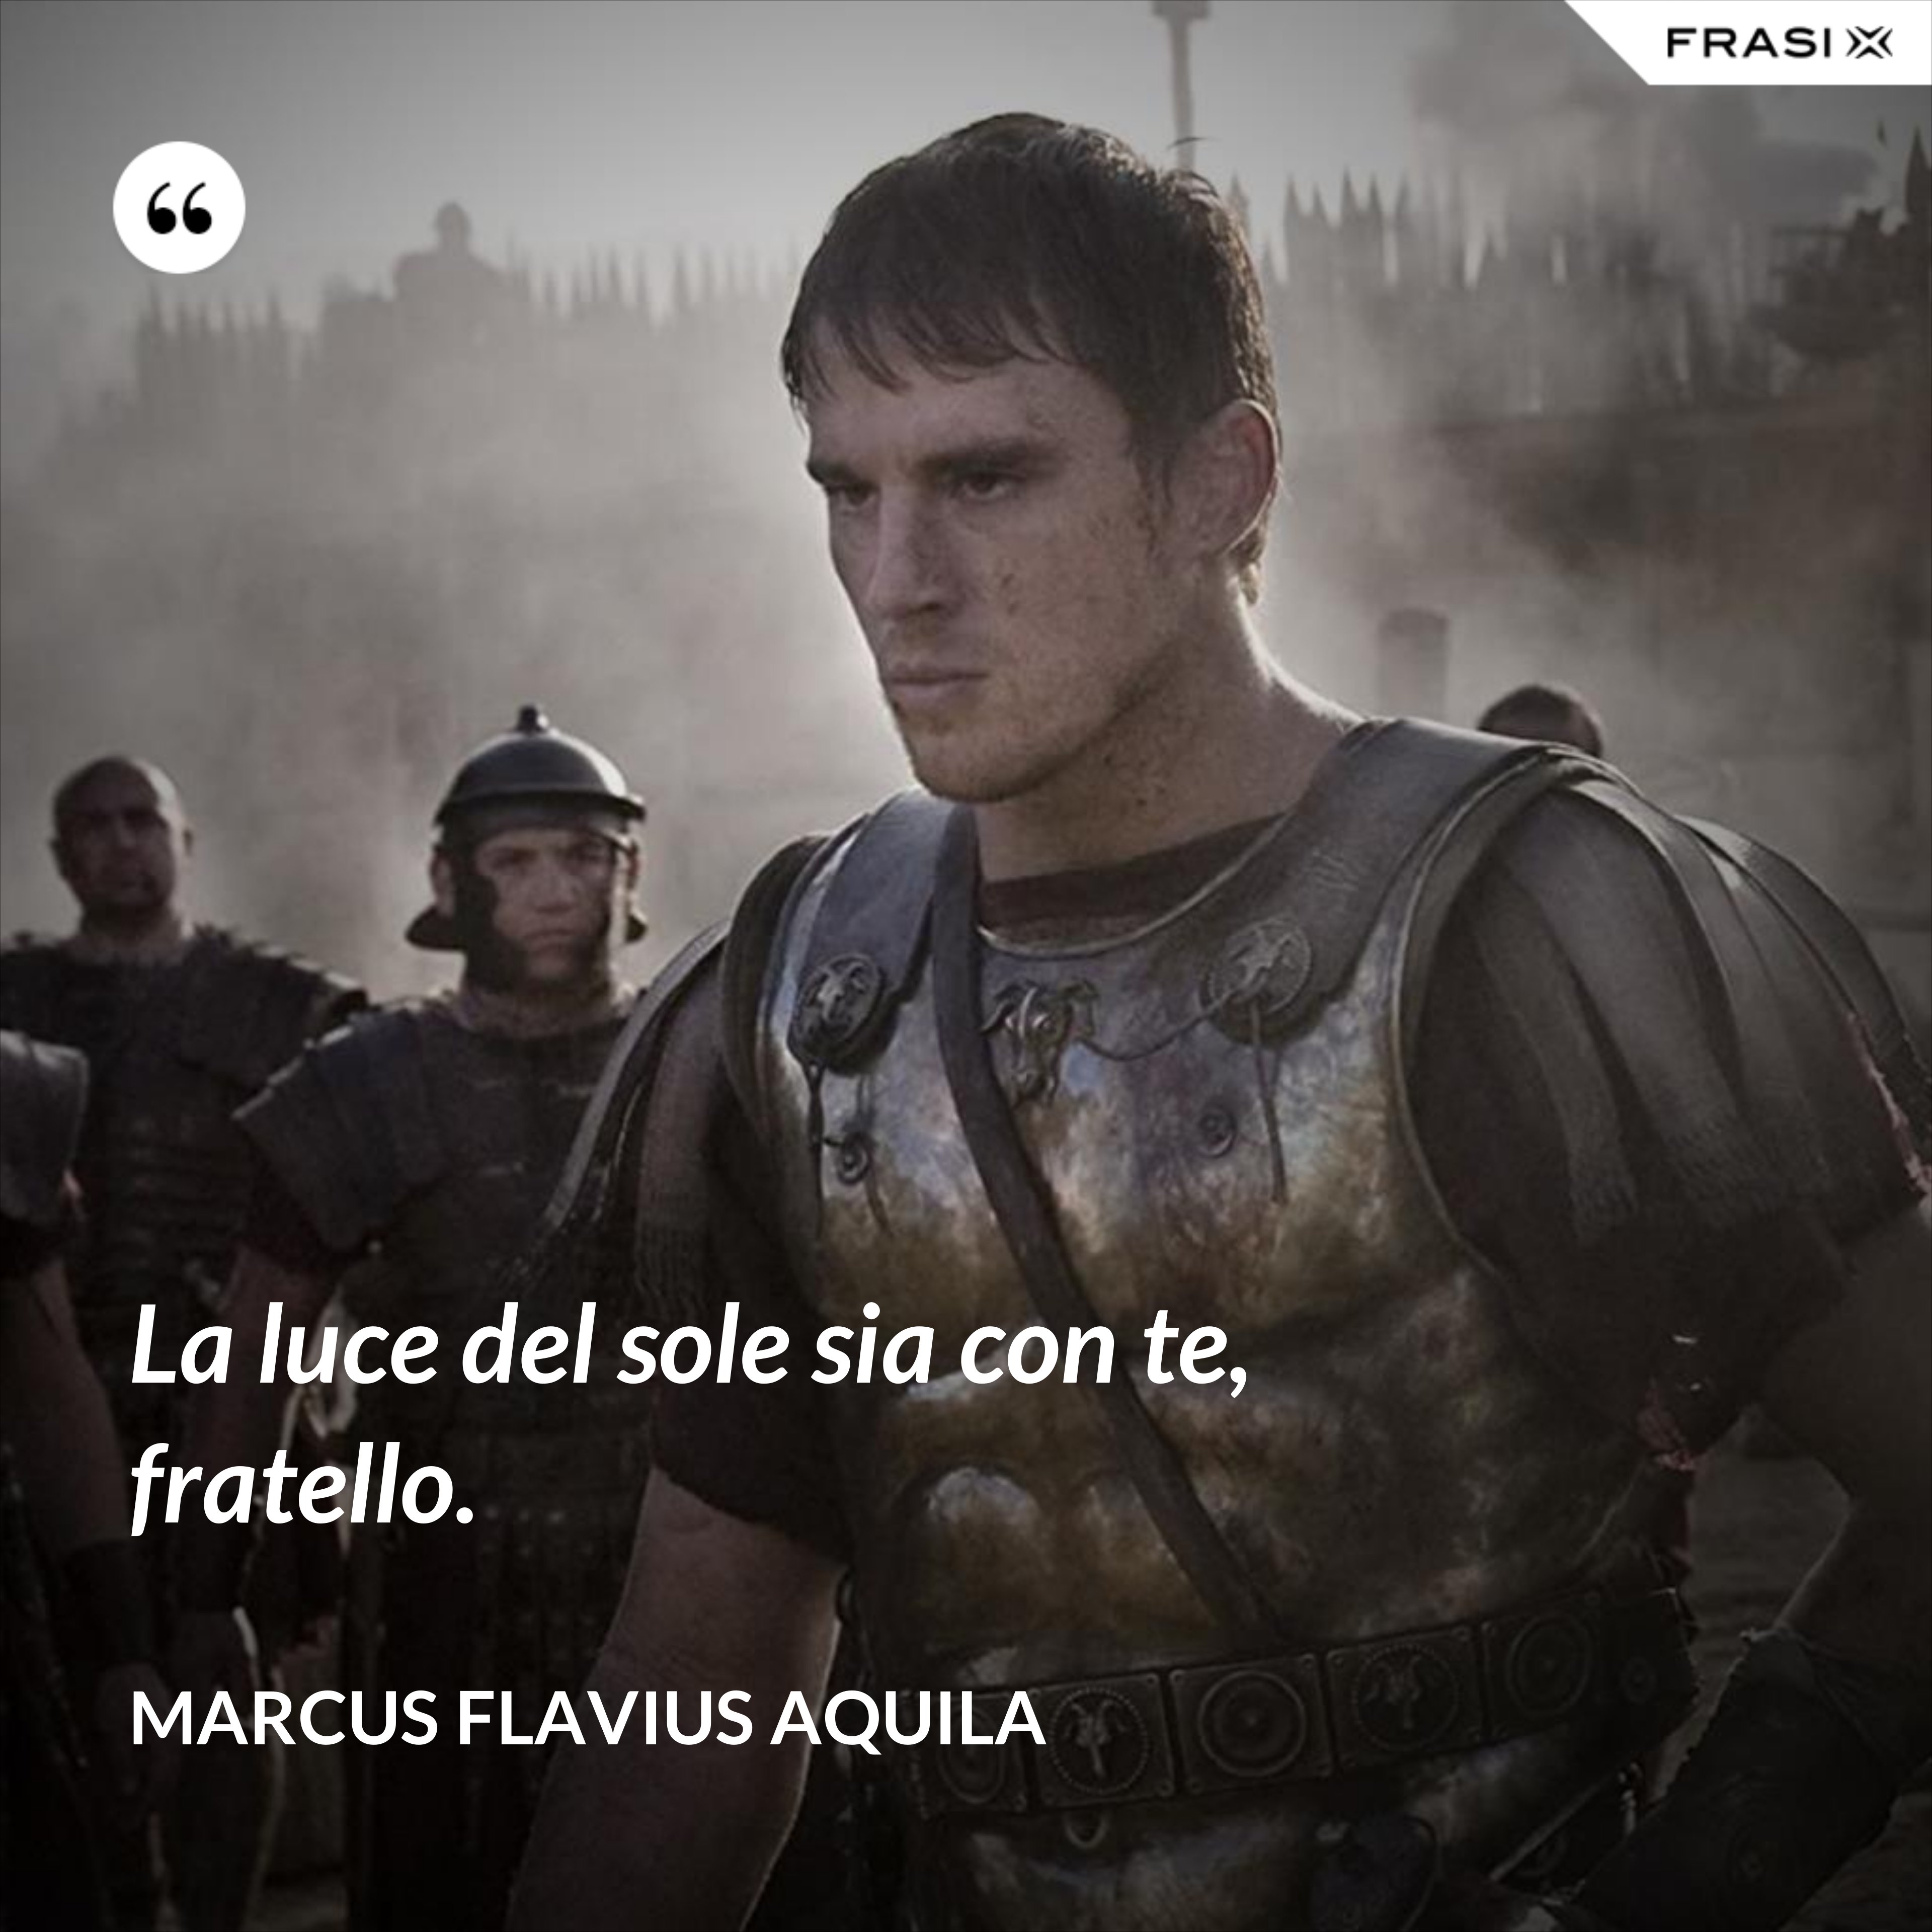 La luce del sole sia con te, fratello. - Marcus Flavius Aquila